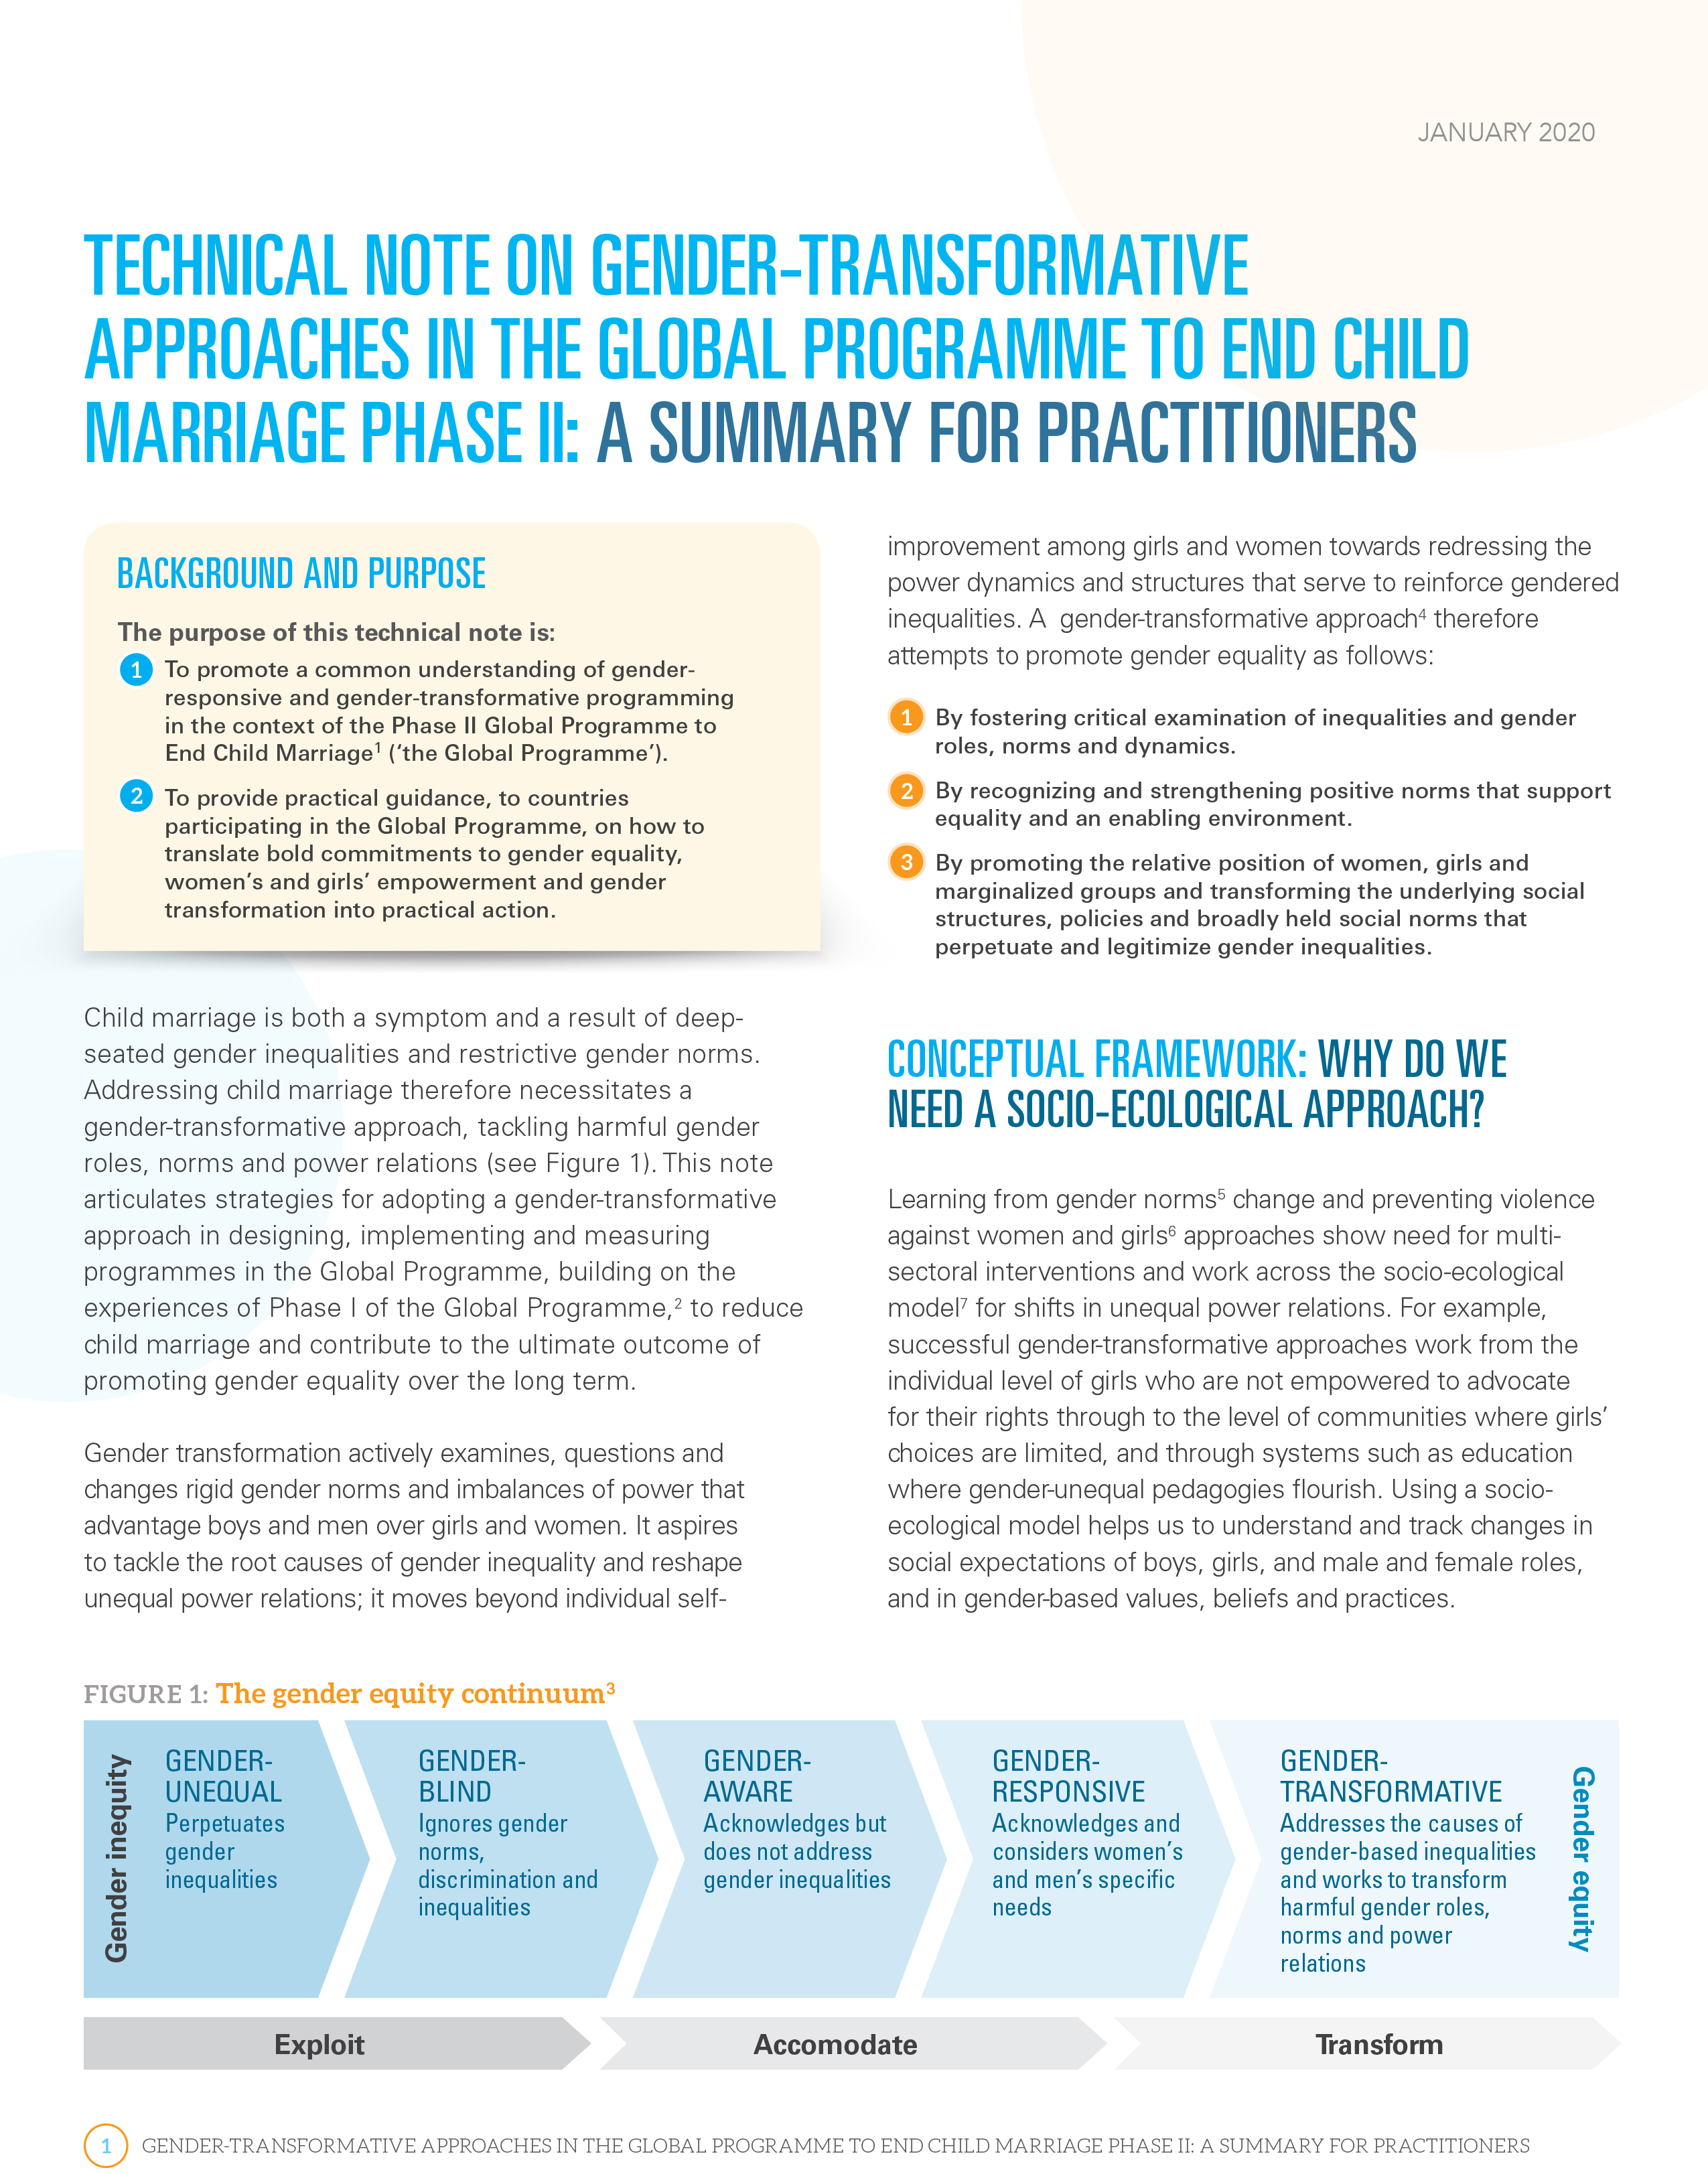 Nota técnica sobre enfoques transformadores de género en el programa mundial de unfpa-unicef para poner fin al matrimonio infantil, fase 2: resumen para profesionales